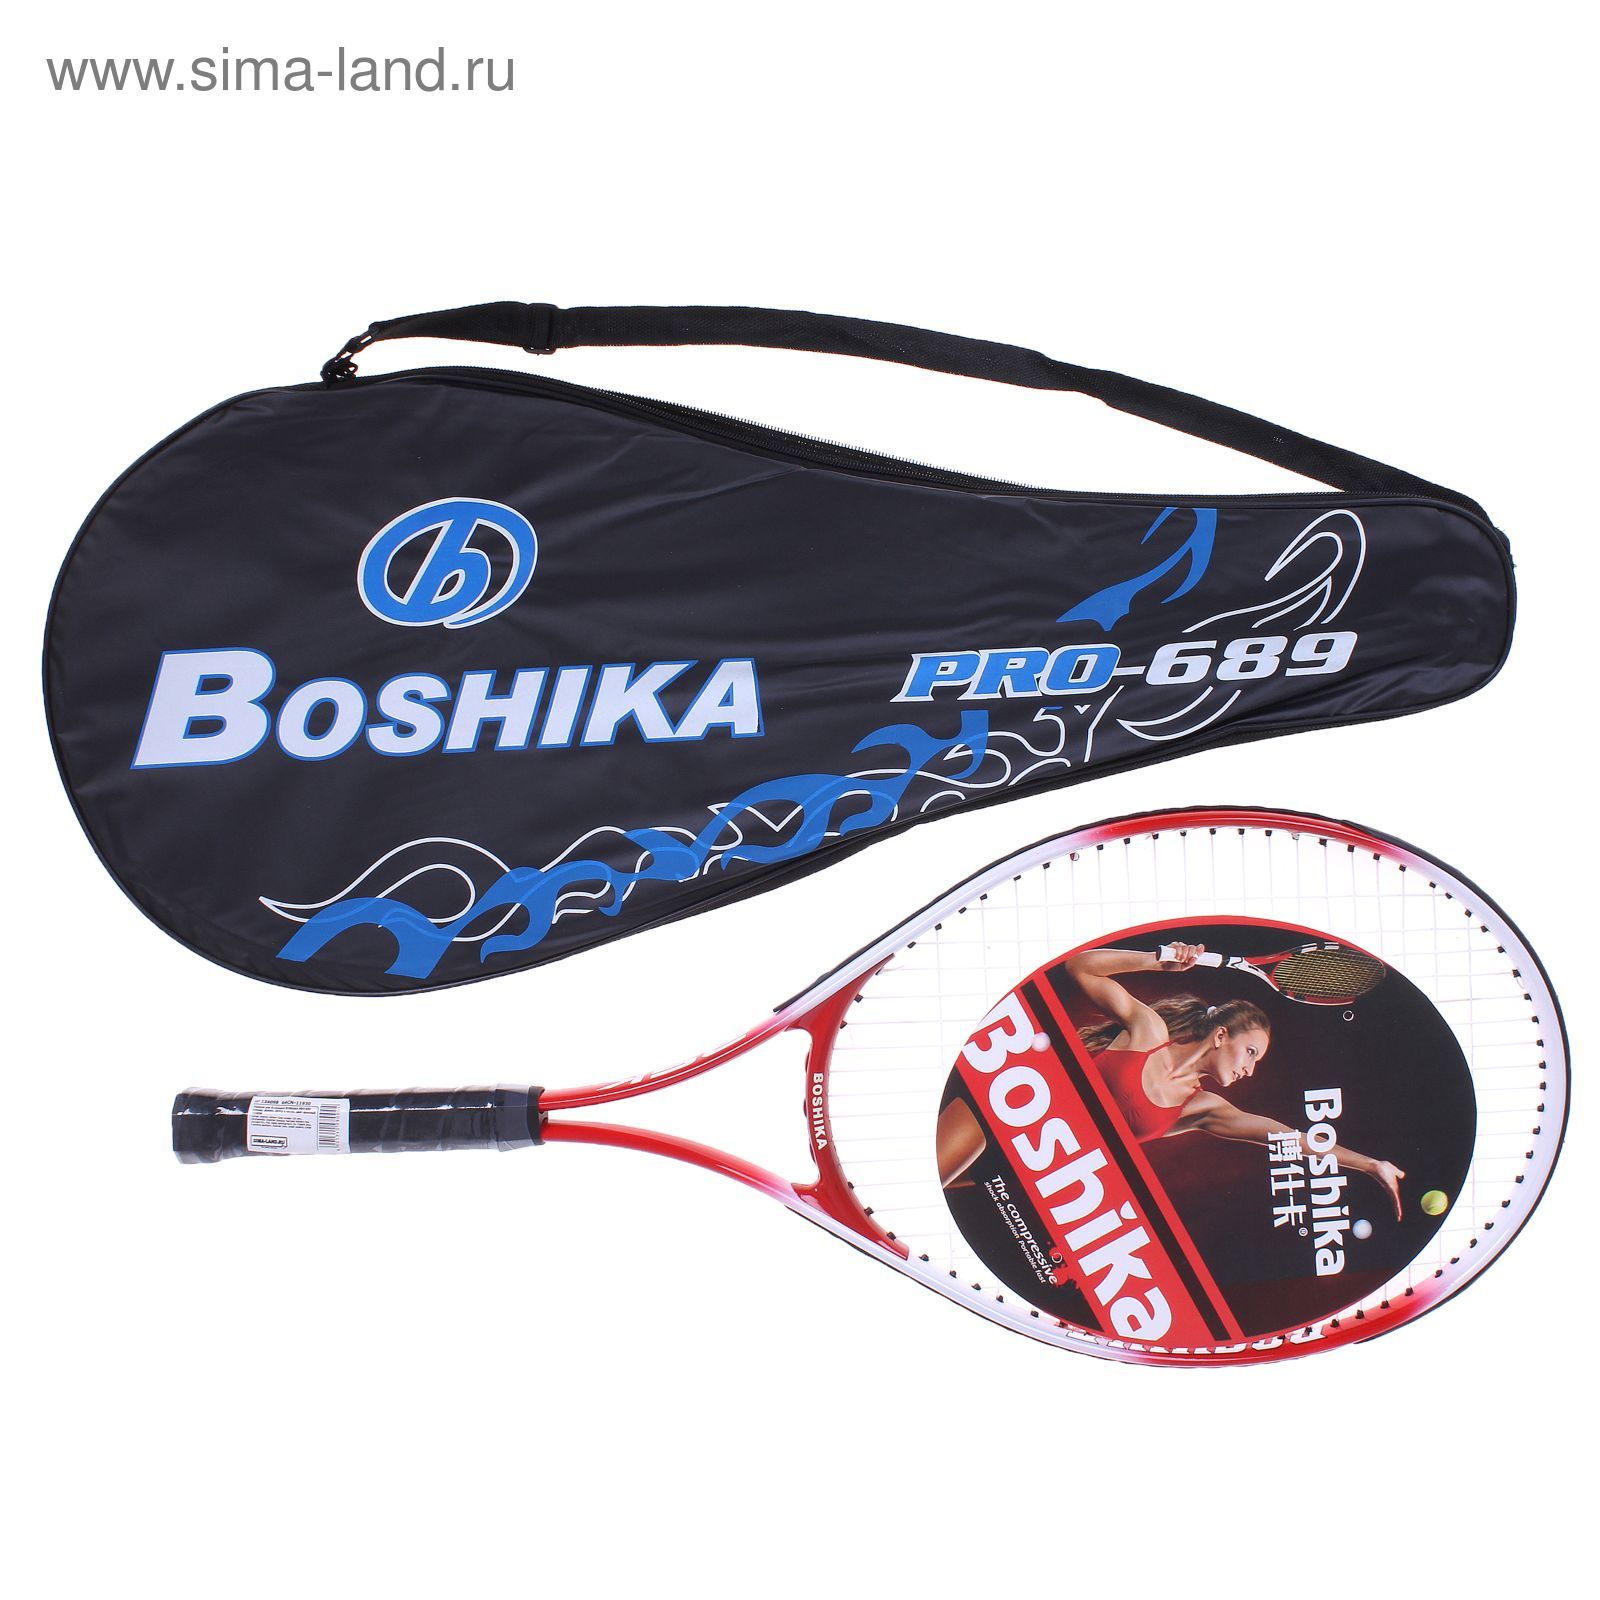 Ракетка для большого тенниса BOSHIKA PRO-689 тренировочная, alumin. 257гр в чехле, красный